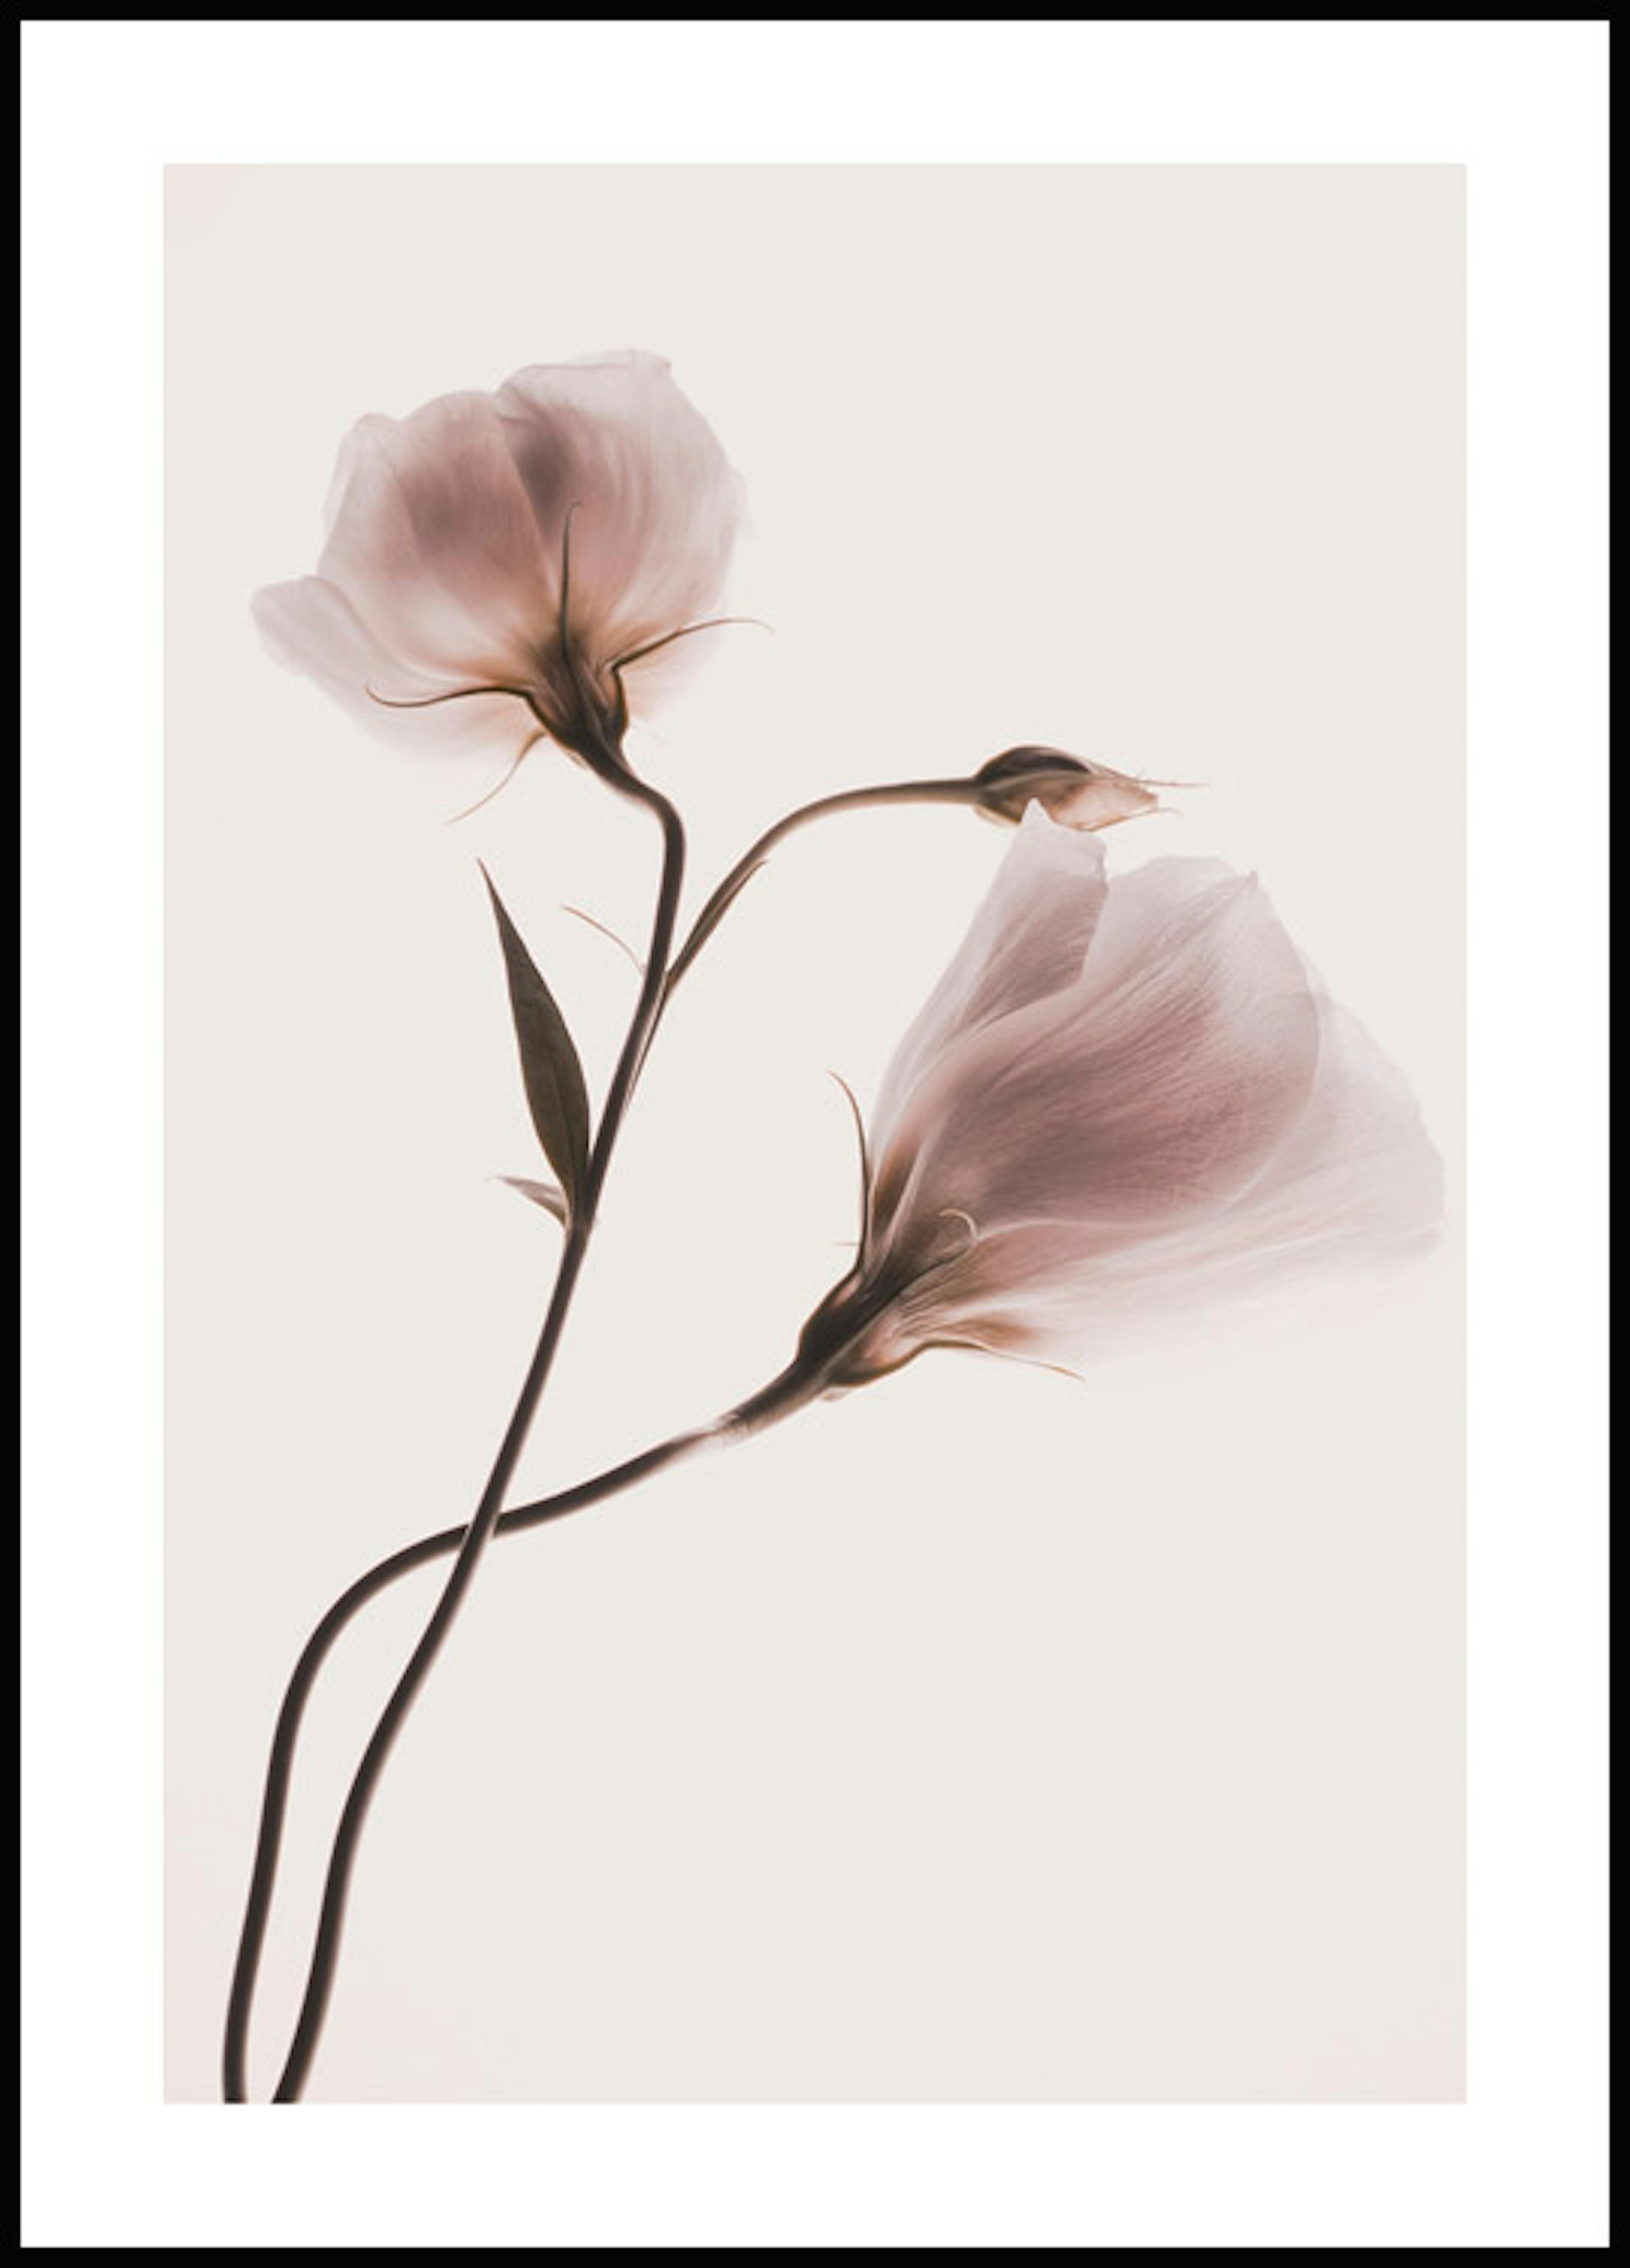 لوحة لصورة الزهور بألوان الباستيل 1 0